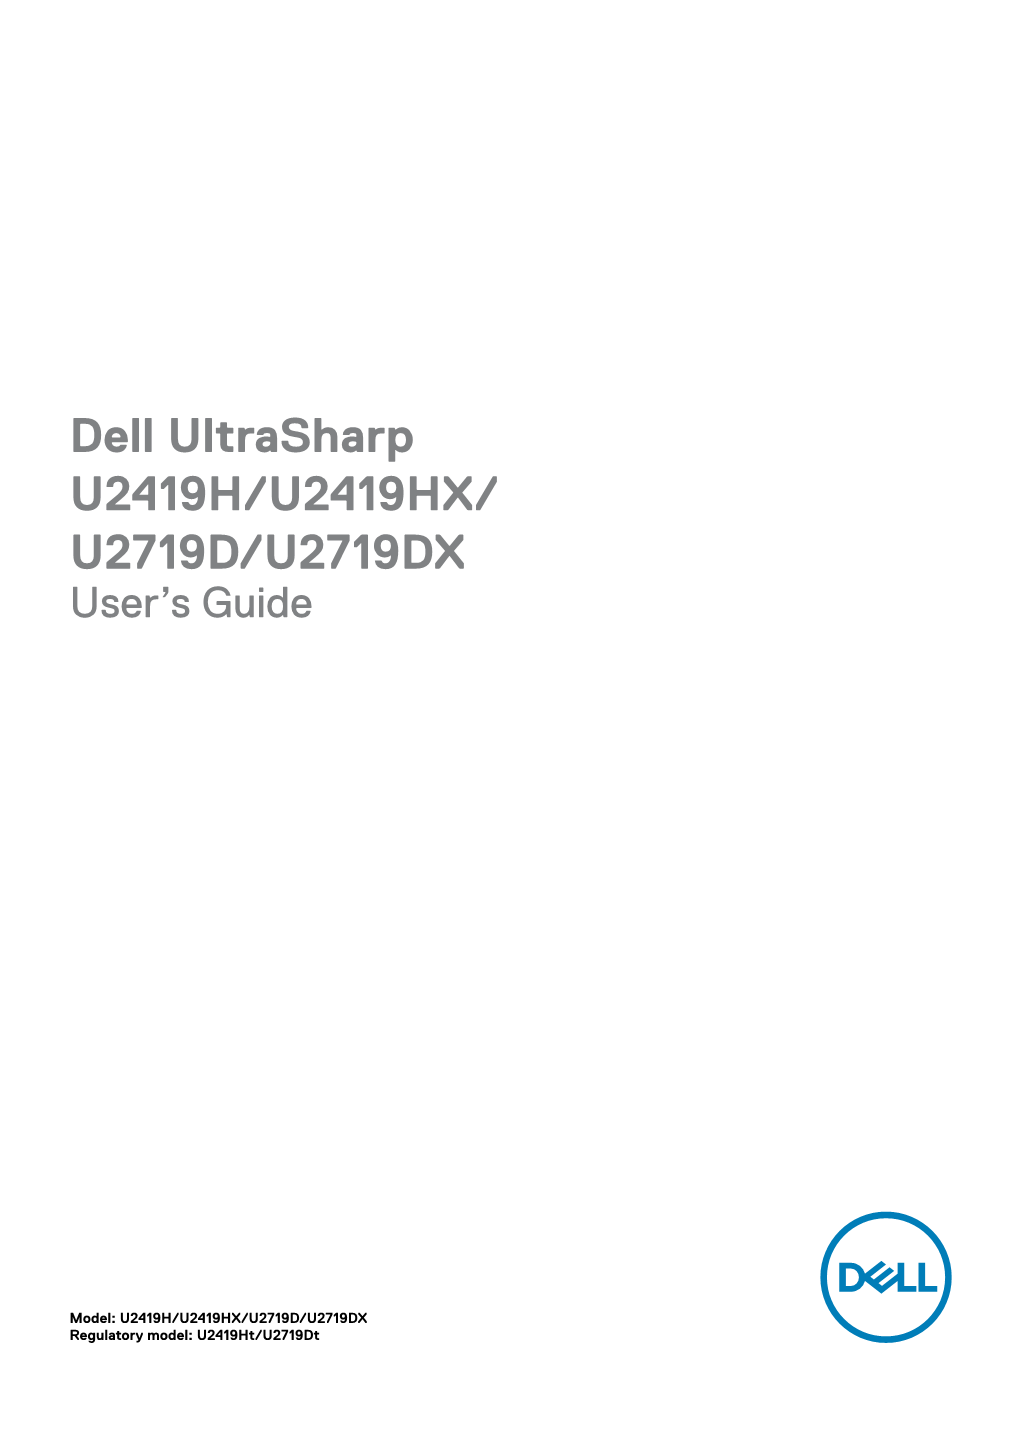 Dell Ultrasharp U2419H/U2419HX/ U2719D/U2719DX User’S Guide